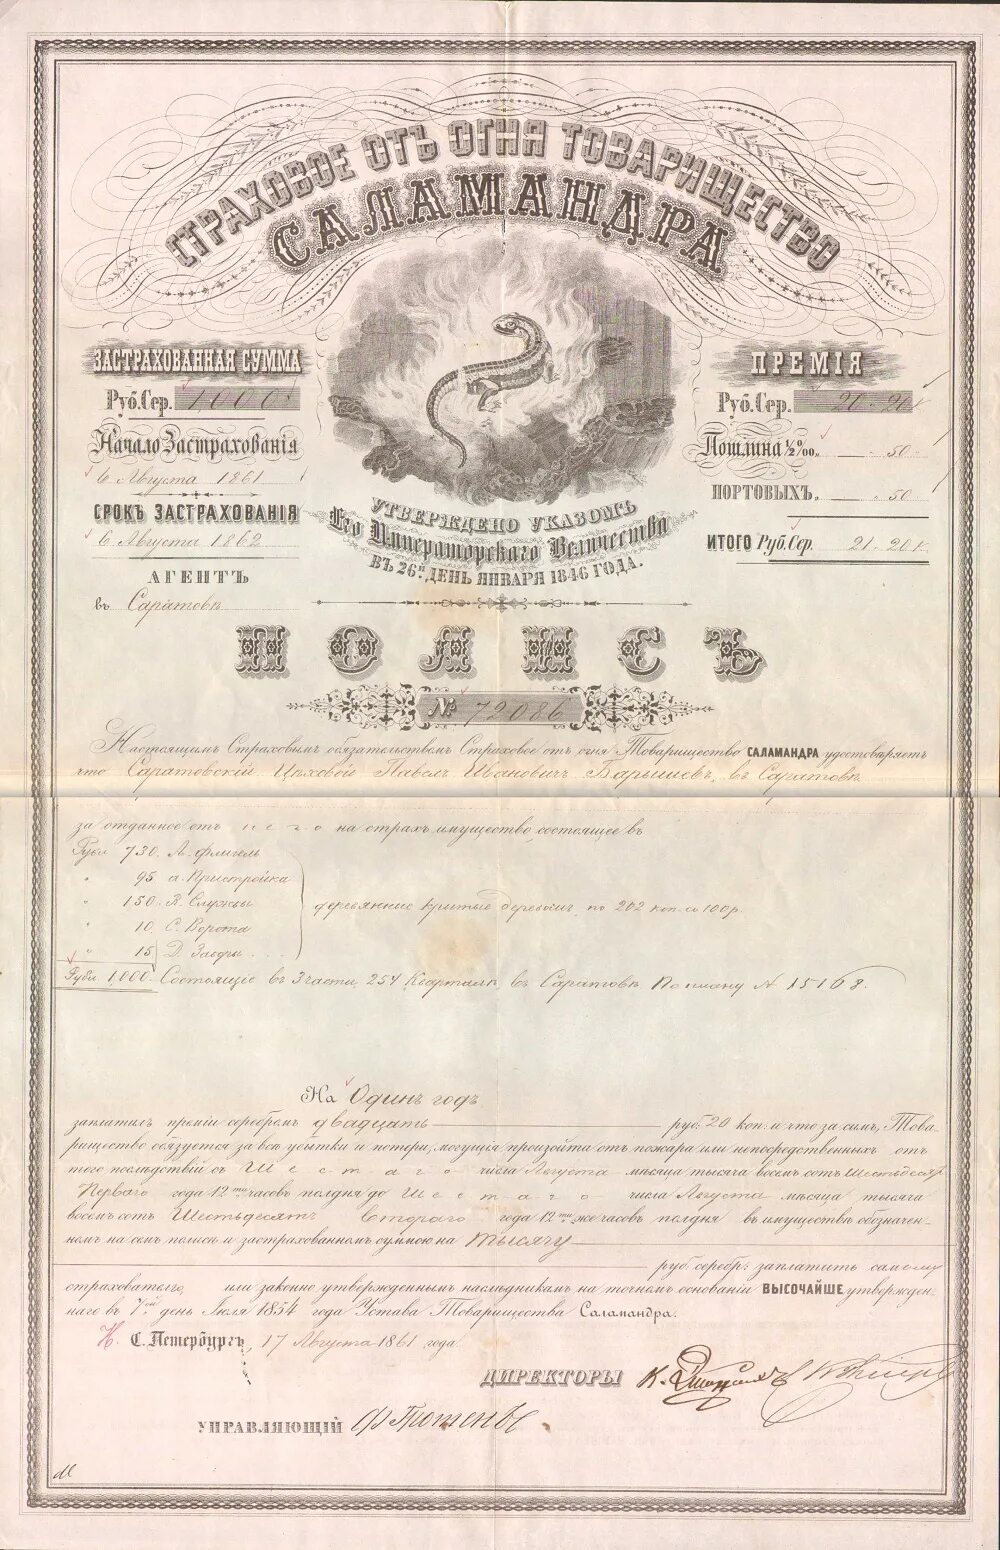 Страховые товарищества. Страховое товарищество саламандра. 1846 Году – товарищество «саламандра». Страховое общество саламандра история. Страховое товарищество "саламандра" в Тифлисе.